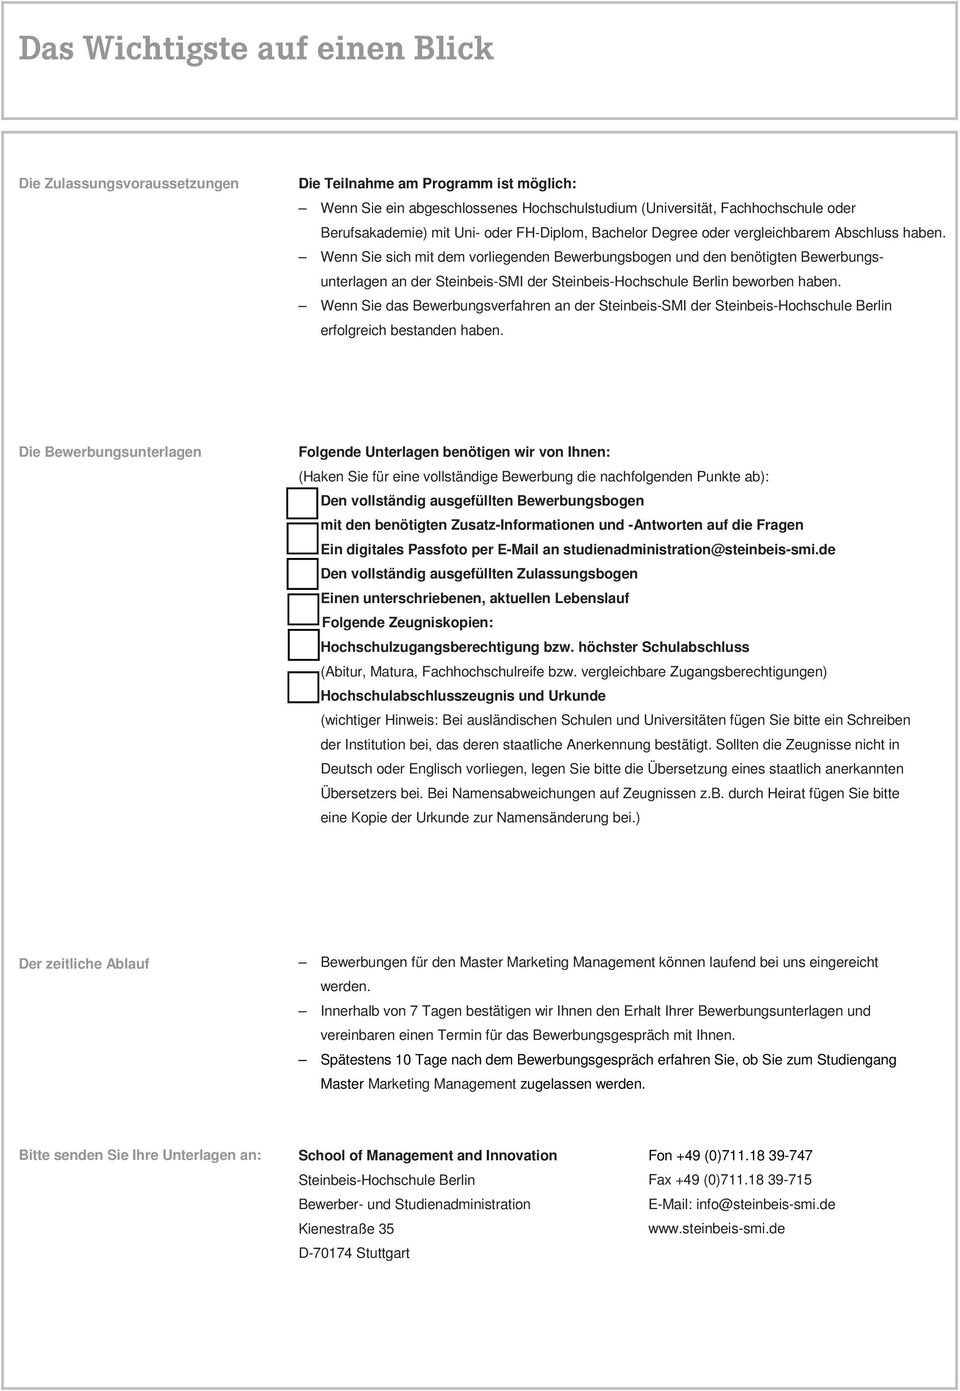 Wenn Sie sich mit dem vorliegenden Bewerbungsbogen und den benötigten Bewerbungsunterlagen an der Steinbeis-SMI der Steinbeis-Hochschule Berlin beworben haben.